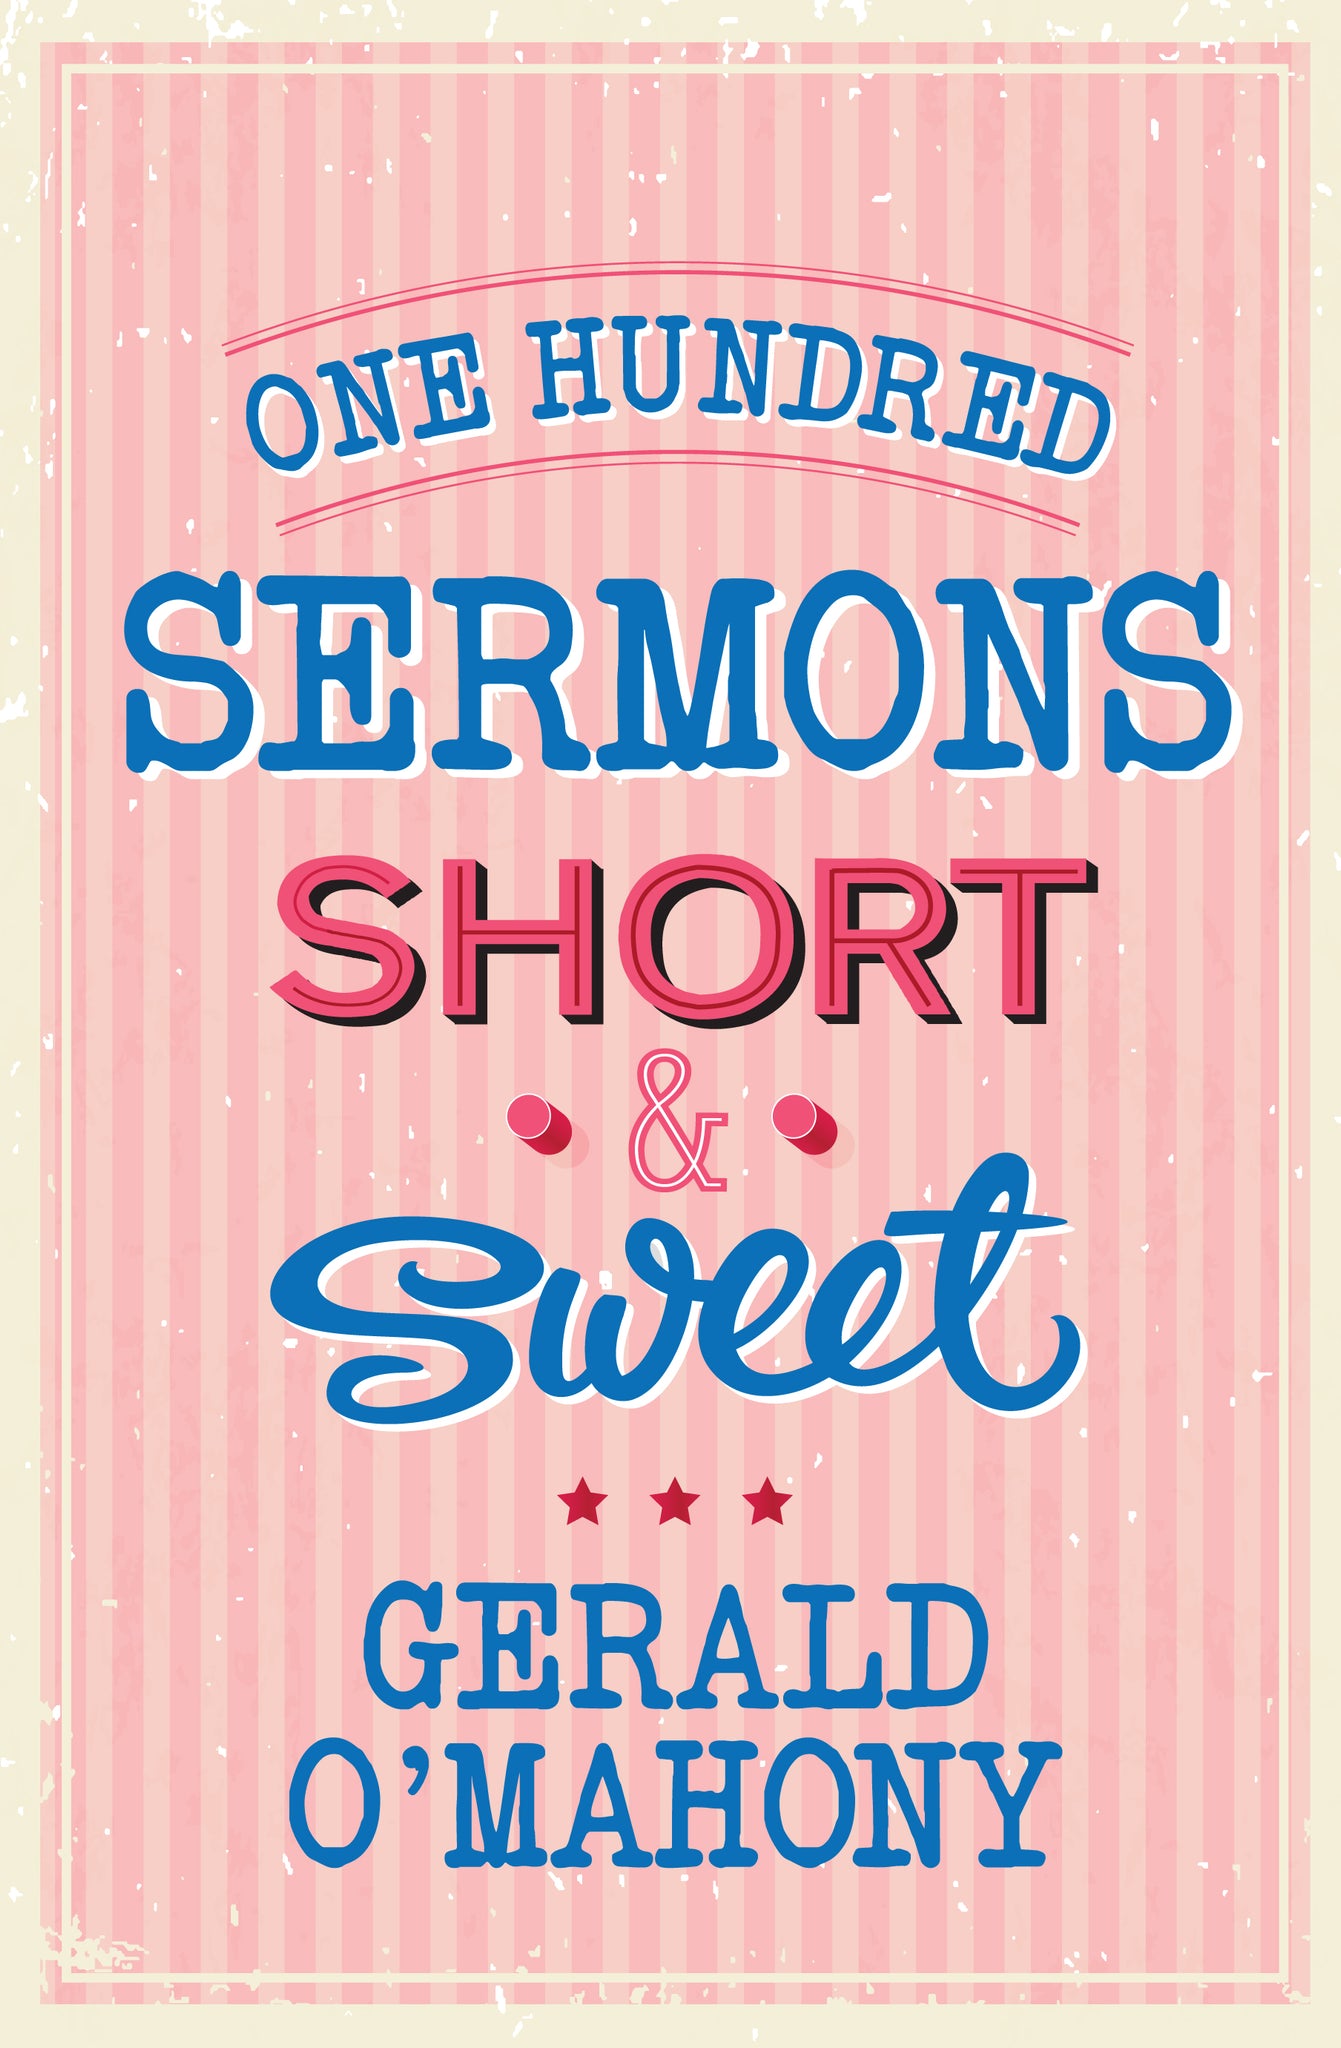 One Hundred Sermons Short & SweetOne Hundred Sermons Short & Sweet